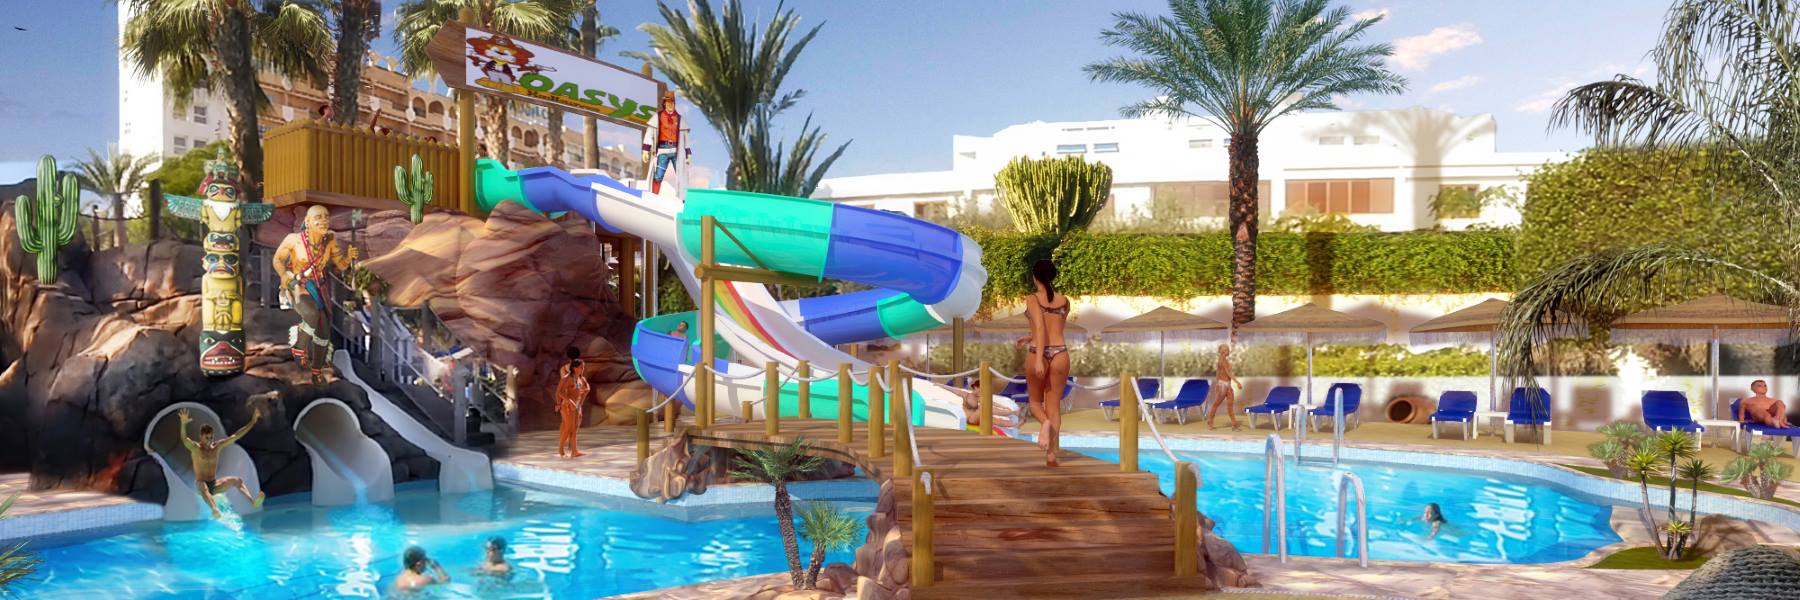 Oferta hotel todo incluido en Almería con toboganes y niños gratis (Aguadulce - ALMERIA)